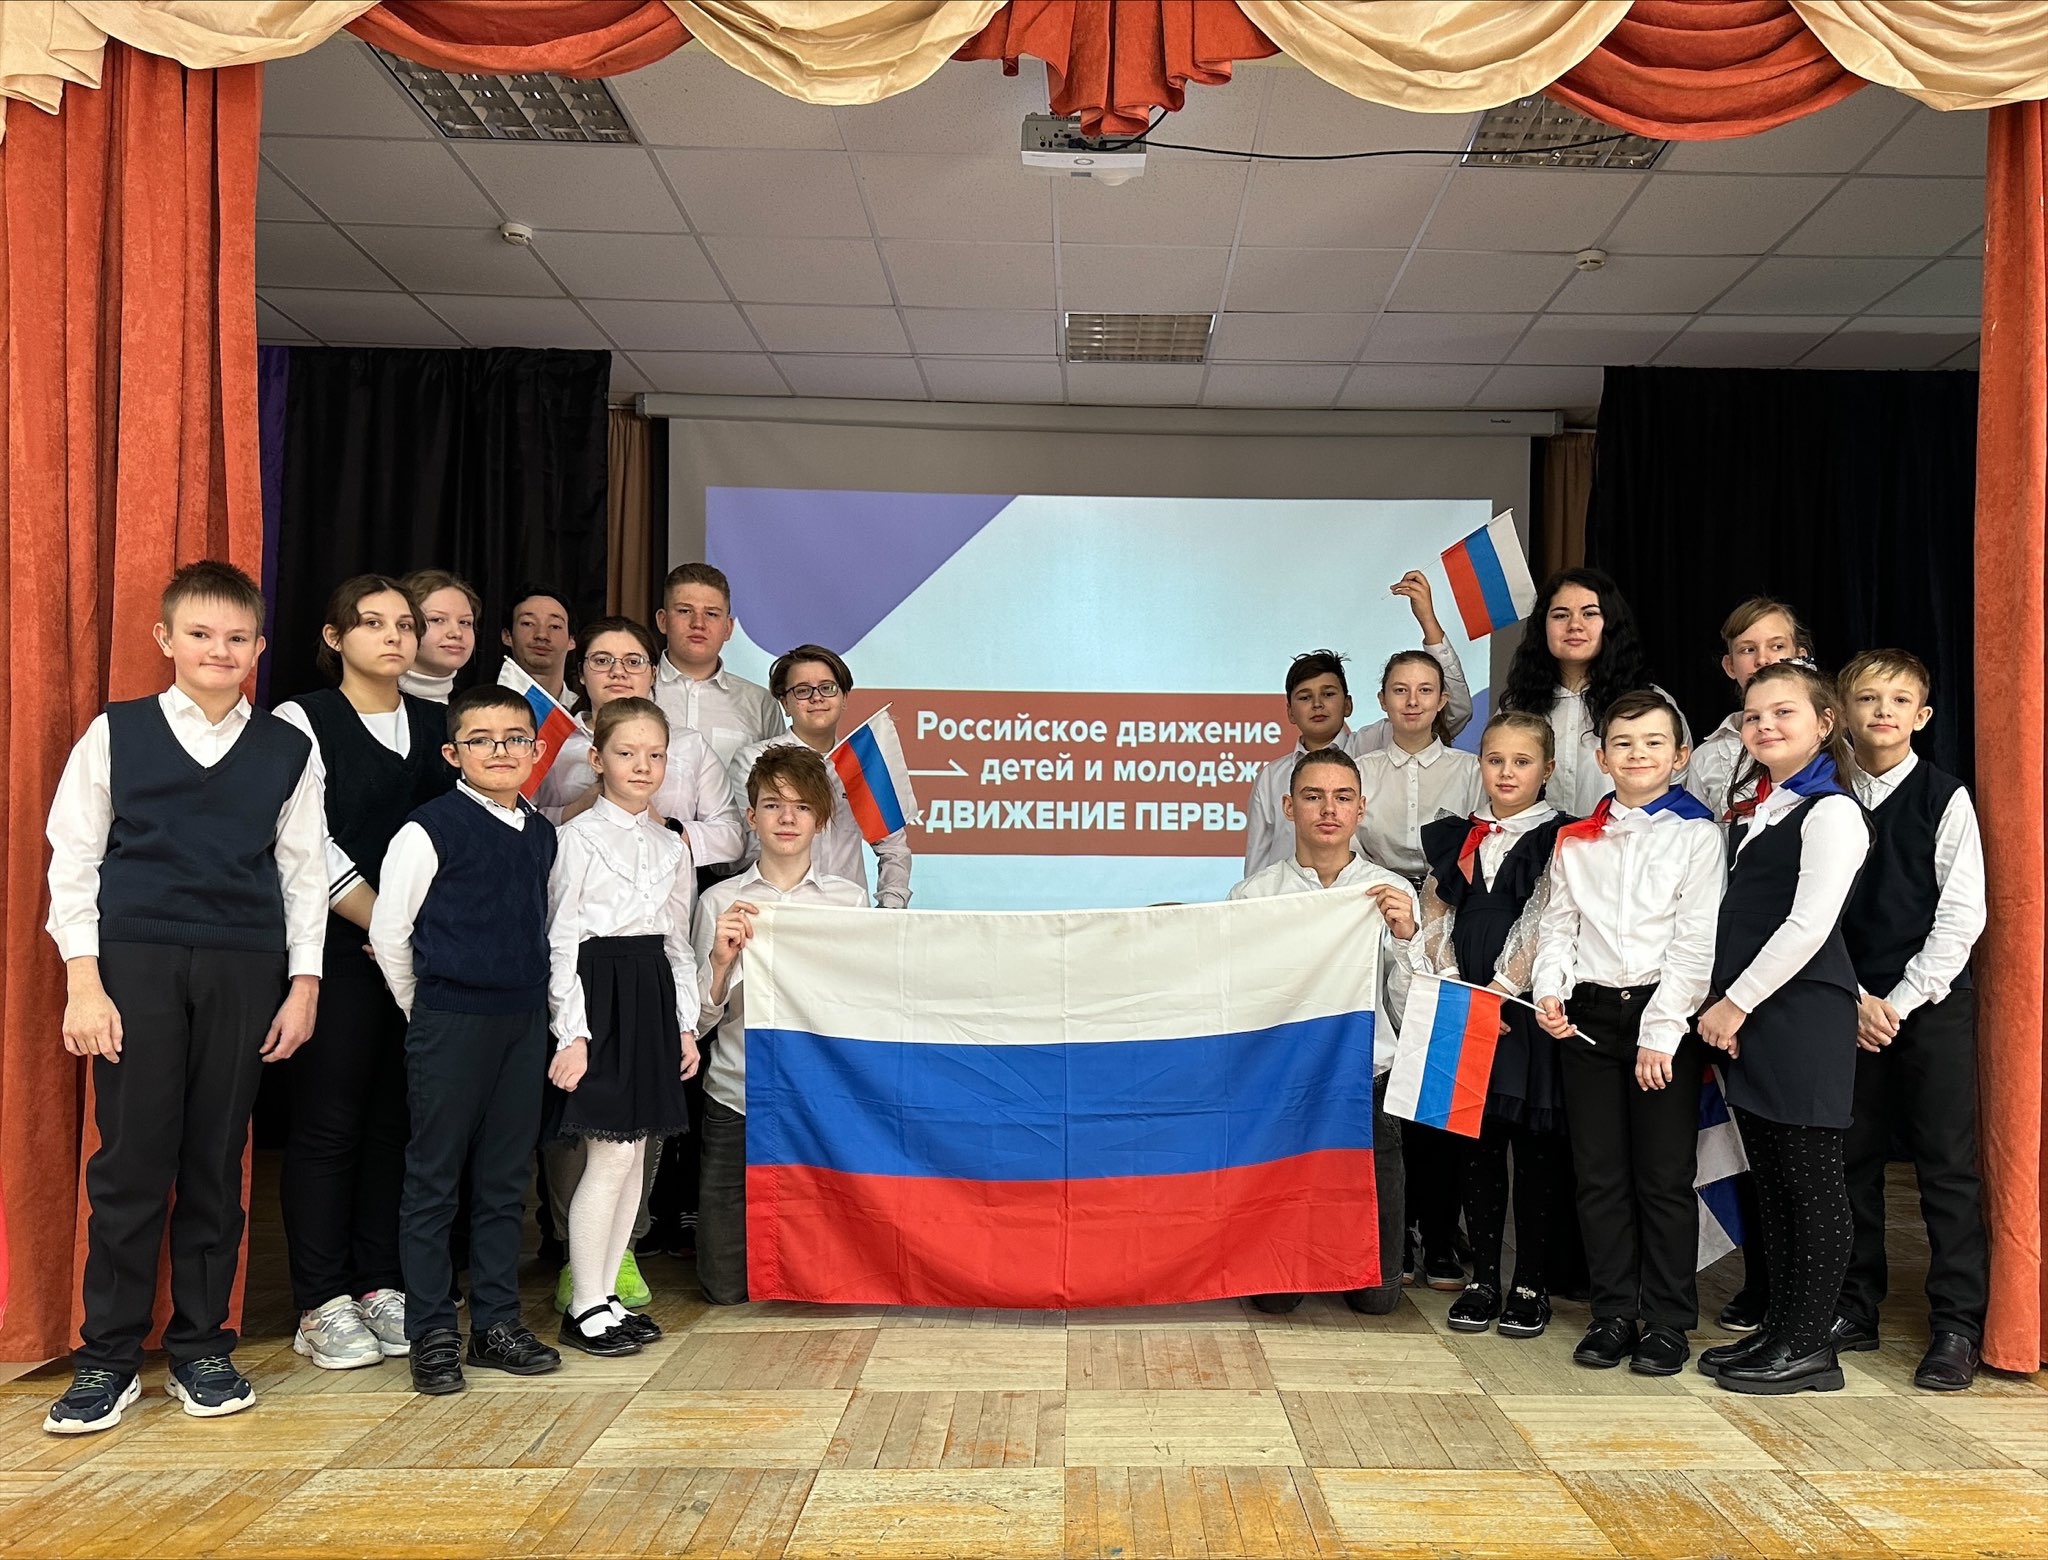 Об открытии первичного отделения Российского движения детей и молодежи «Движение первых»